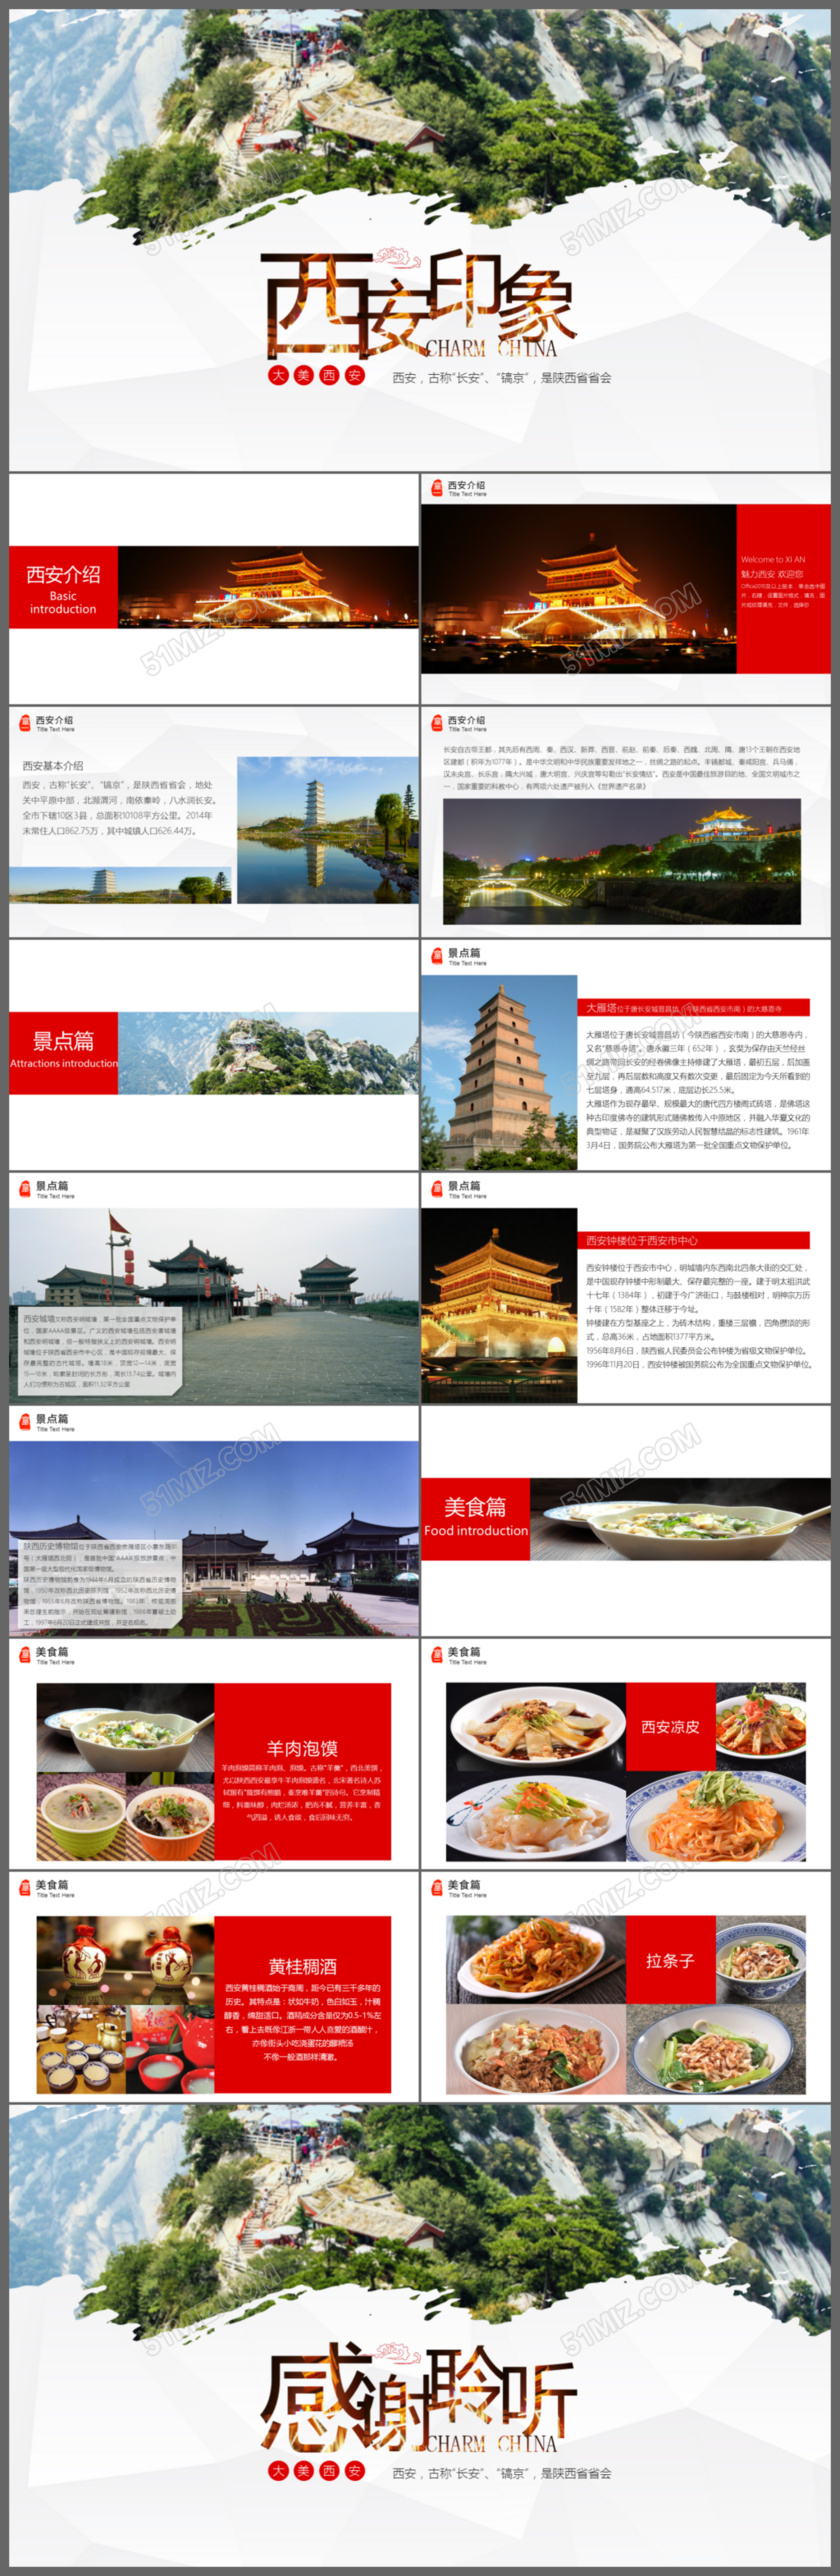 西安旅游西安文化风景介绍ppt素材下载模板